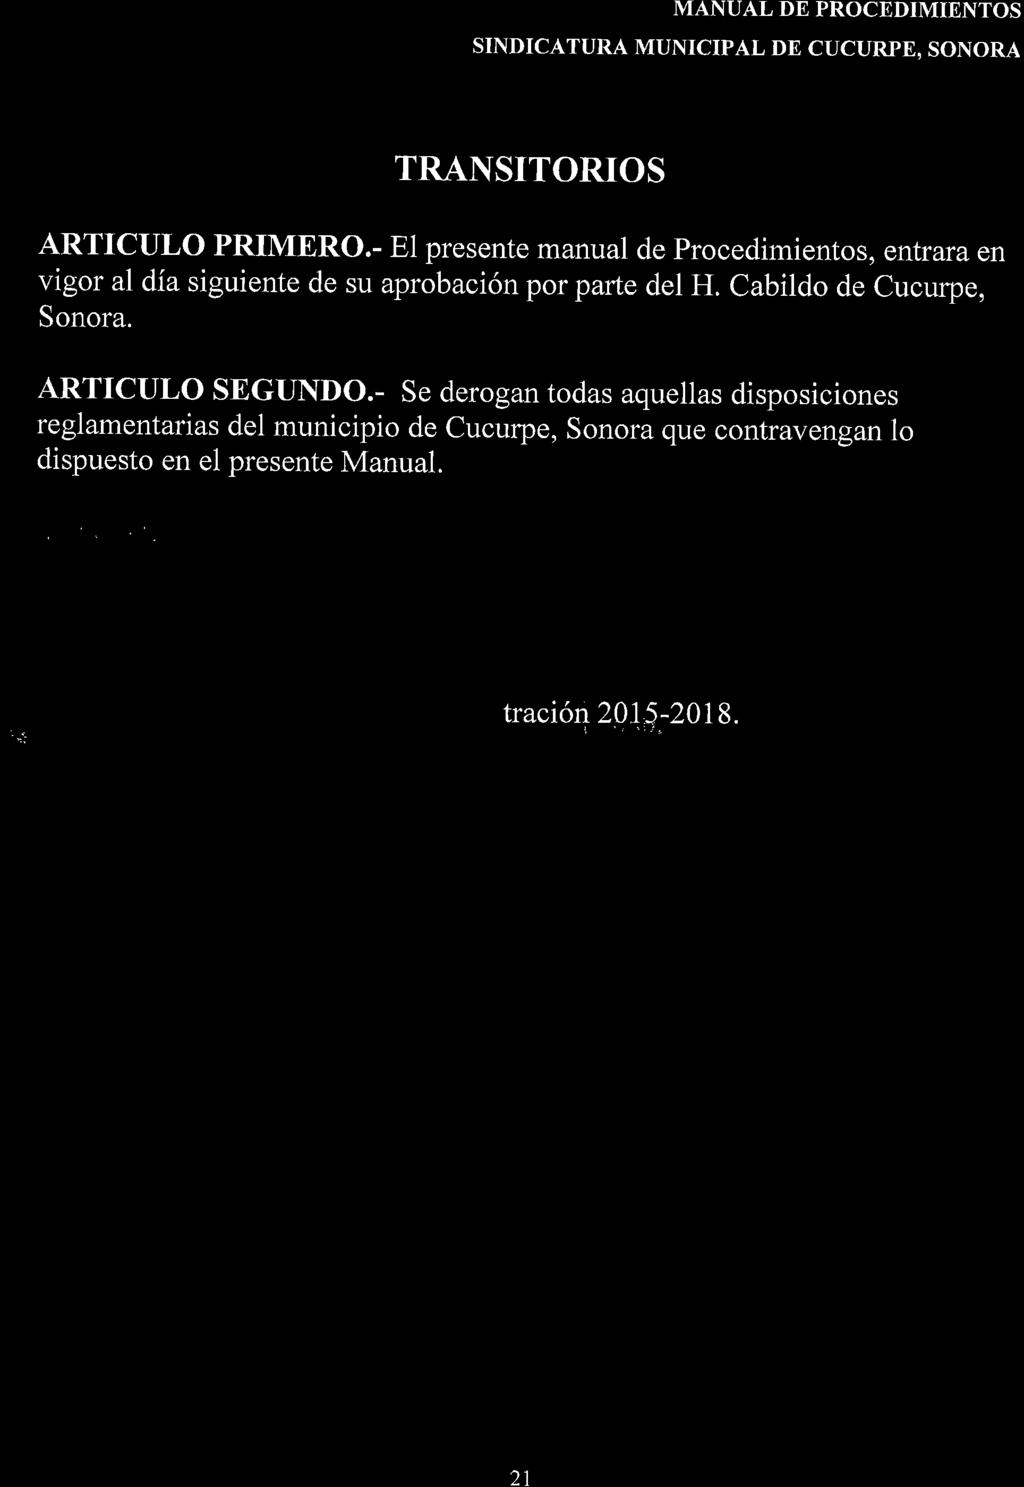 TRANSITORIOS ARTICULO PRIMERO.- El presente manual de Procedimientos, entrara en vigor ai día siguiente de su aprobación por parfe del H. Cabildo de Cucurpe, Sonora.